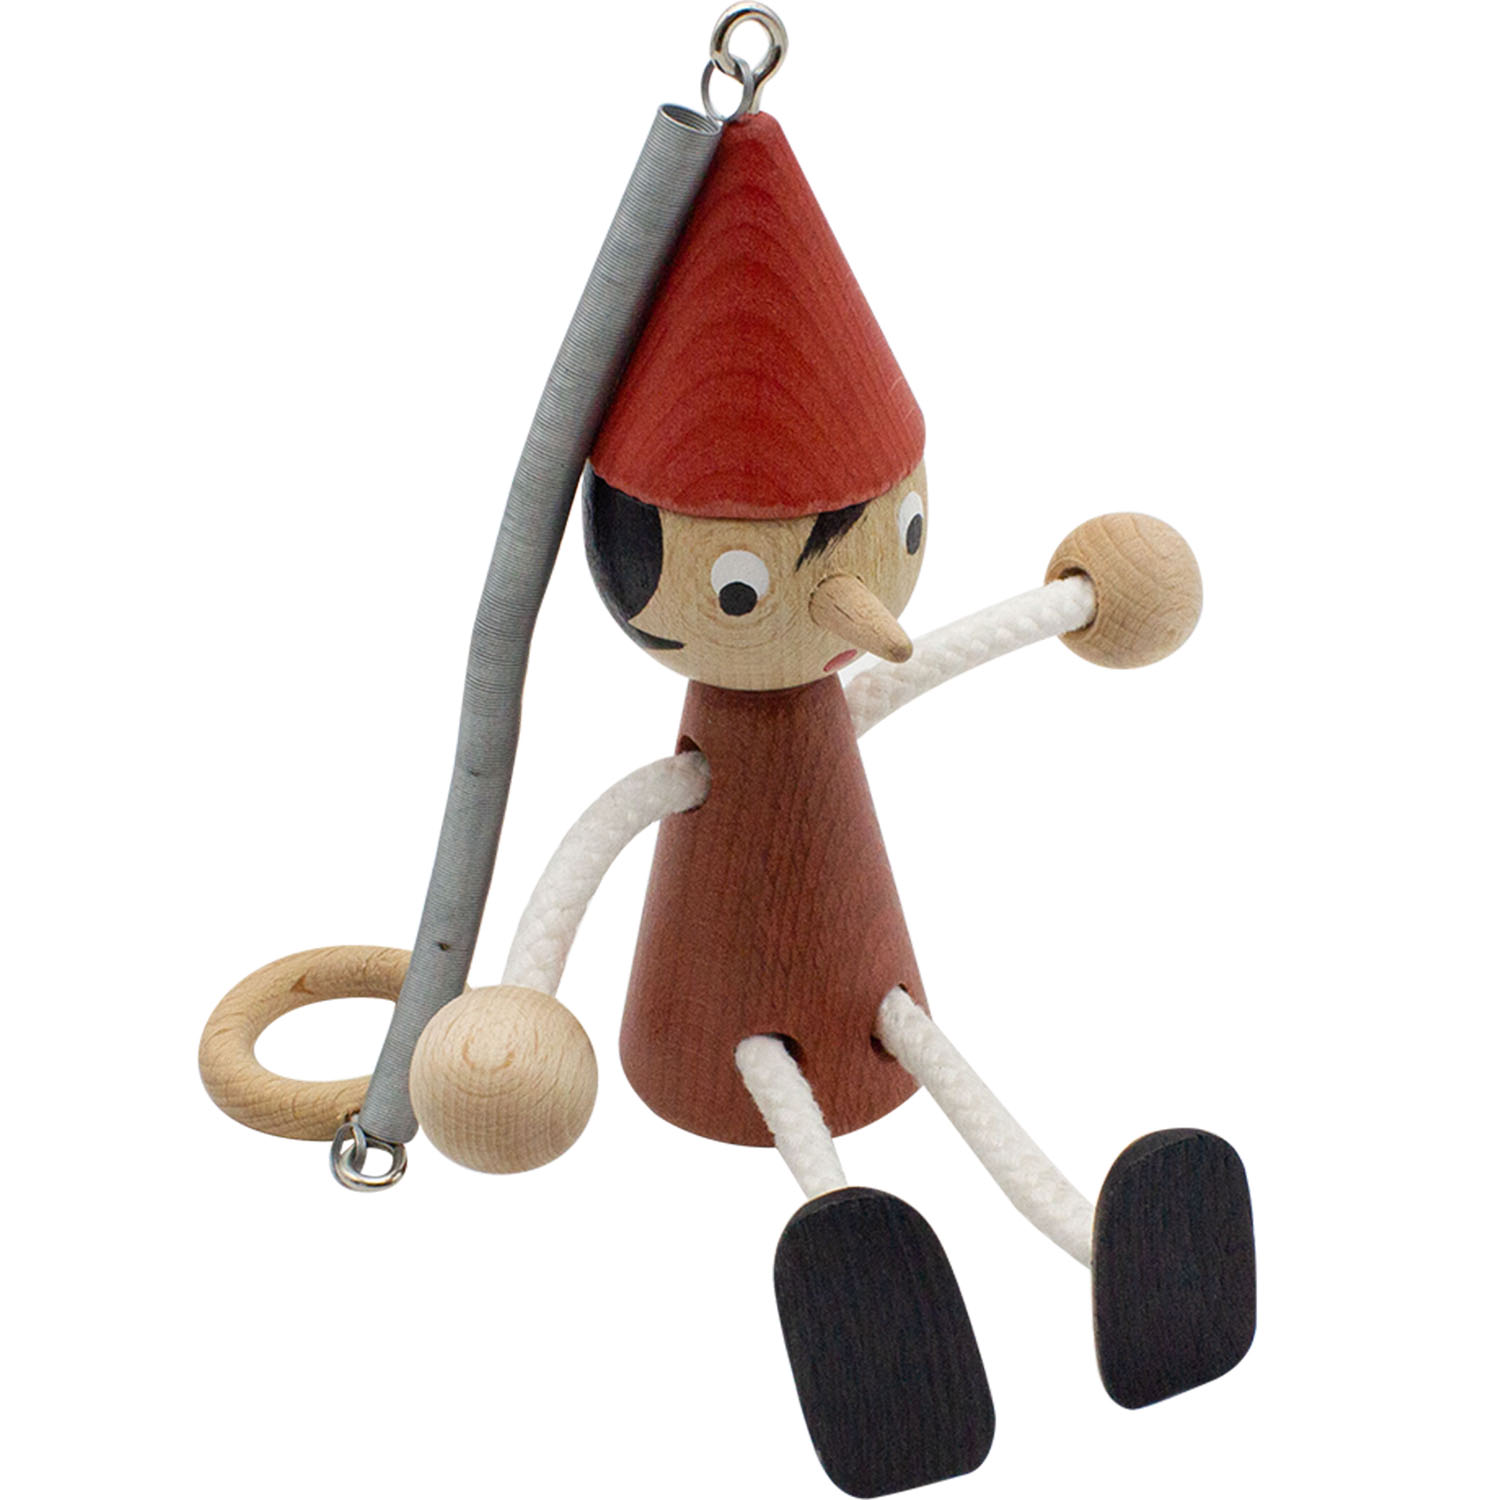 Pinocchio Schwingfigur aus Holz, lasiert mit Feder, Länge 20 cm + 18 cm Feder- Made in Italy- 9006